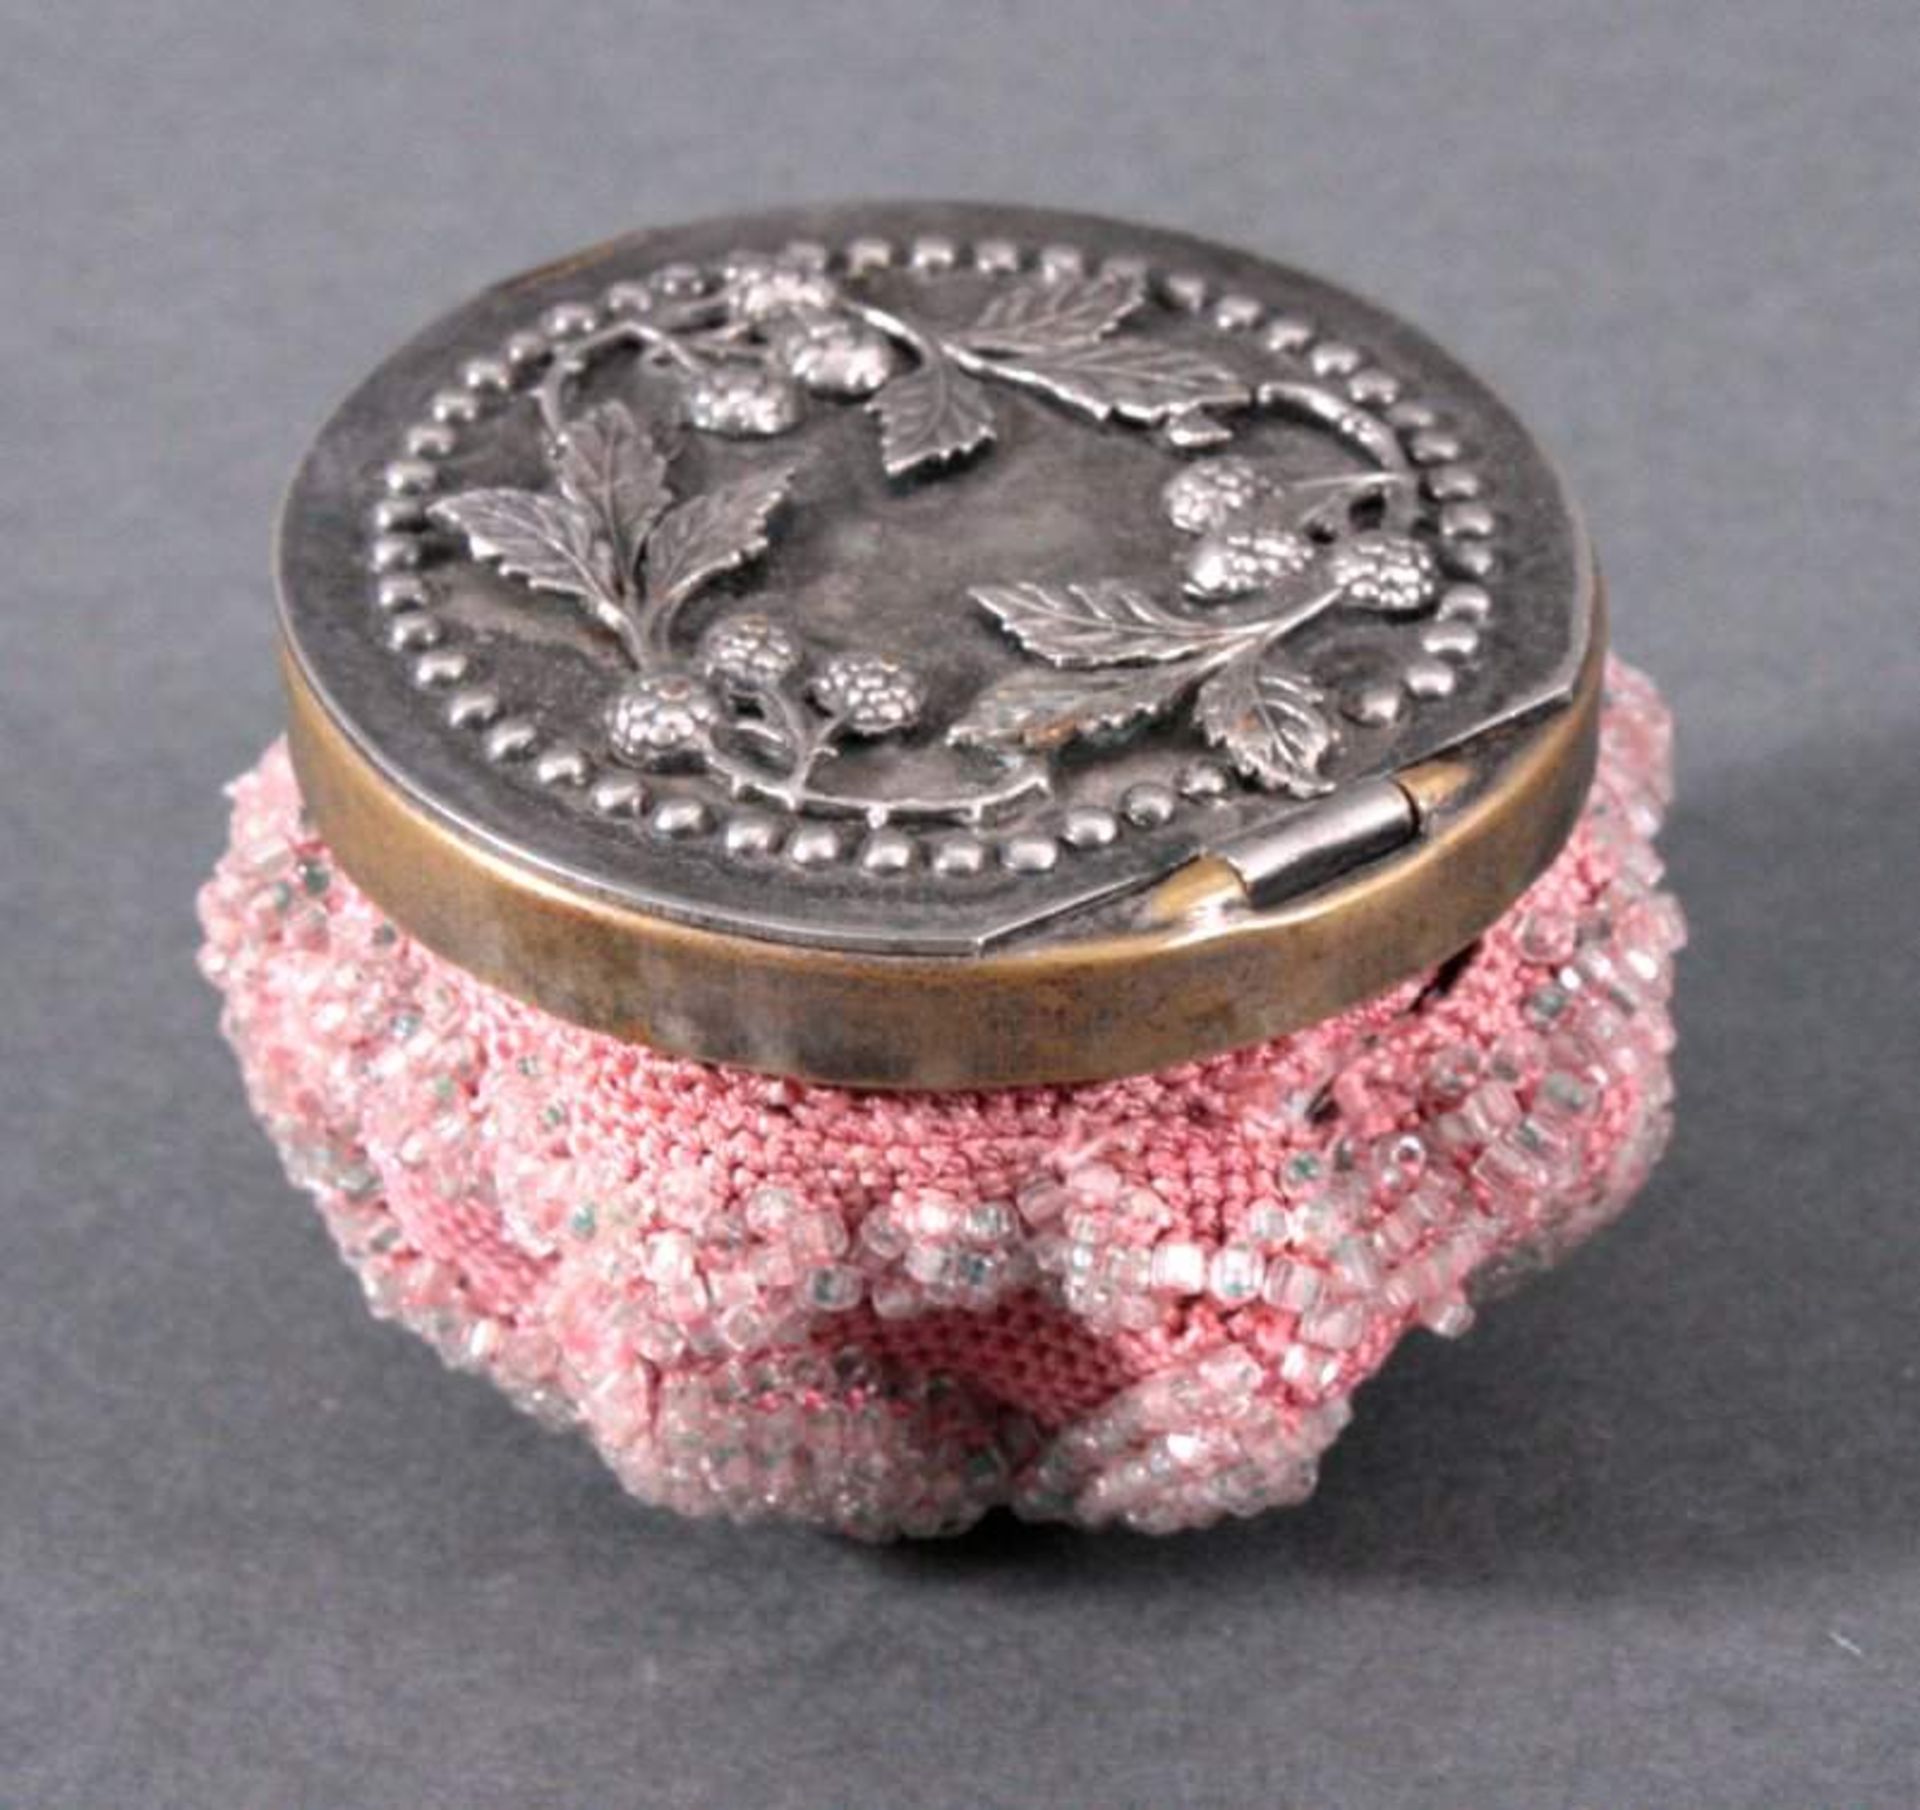 Geldbörse 19. Jh.Rosa Stoffbeutel mit Perlenbesatz, versilberte Montur,reliefierter Deckel, verziert